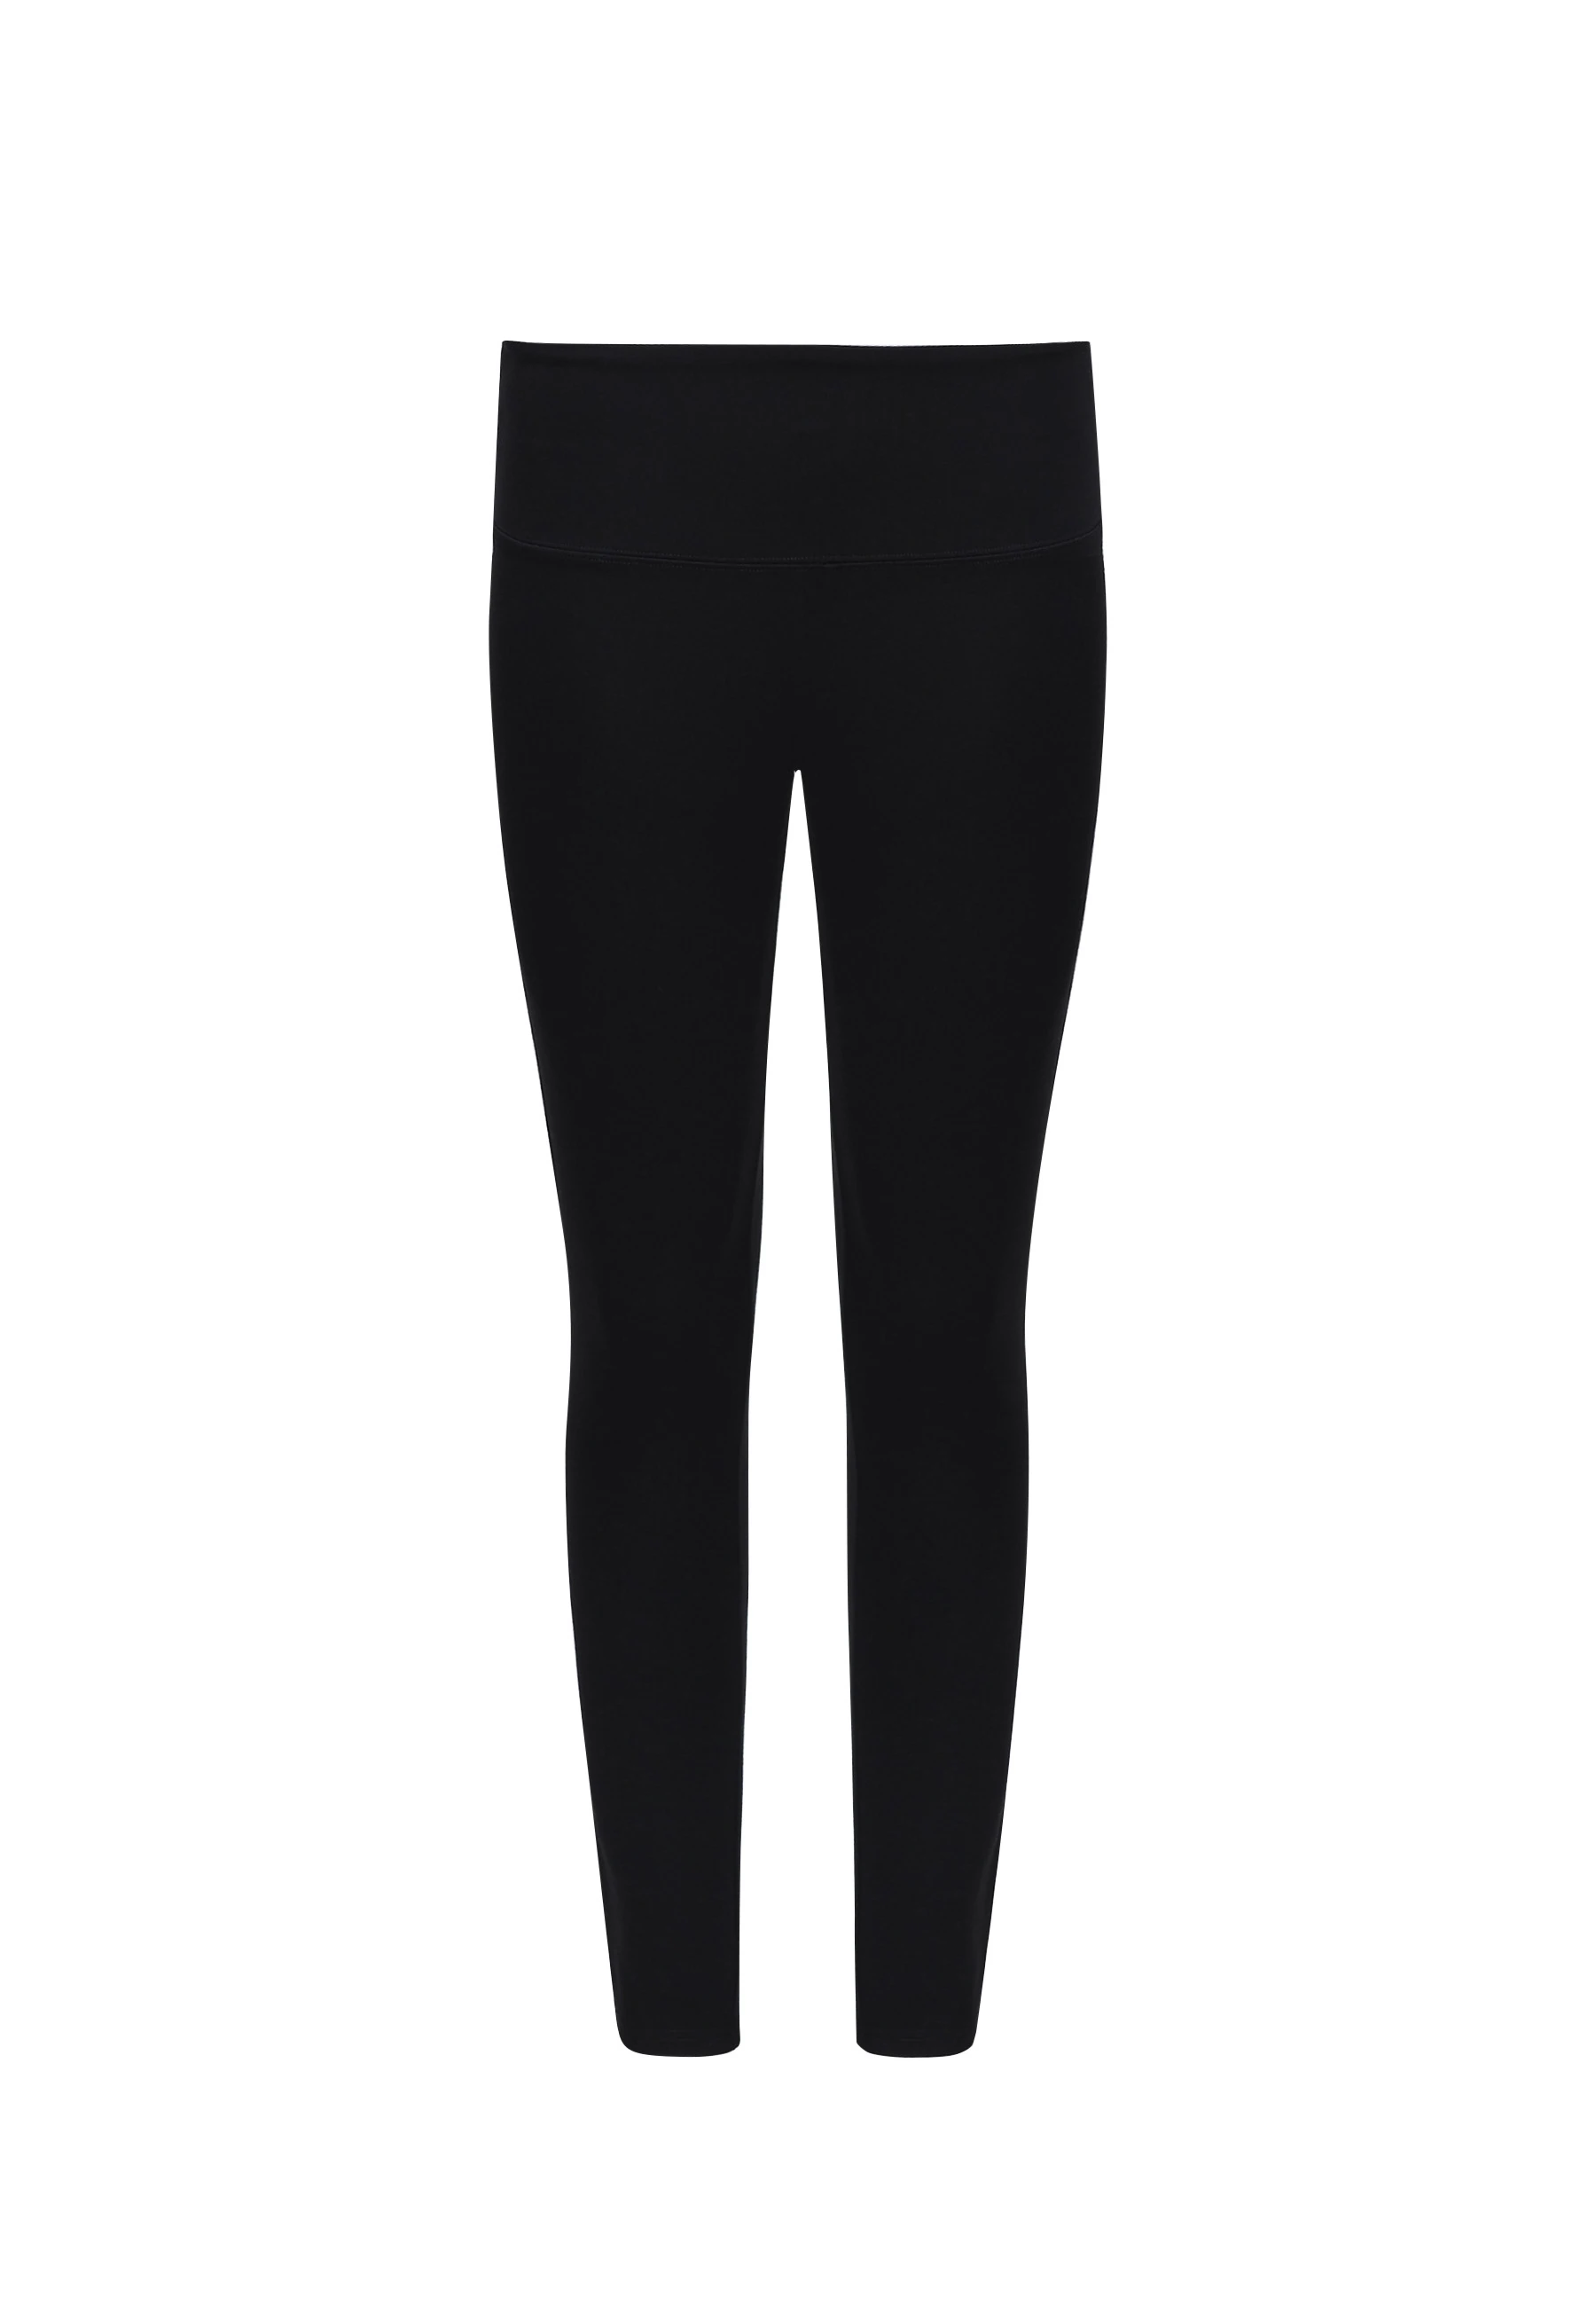 Black high-waisted leggings